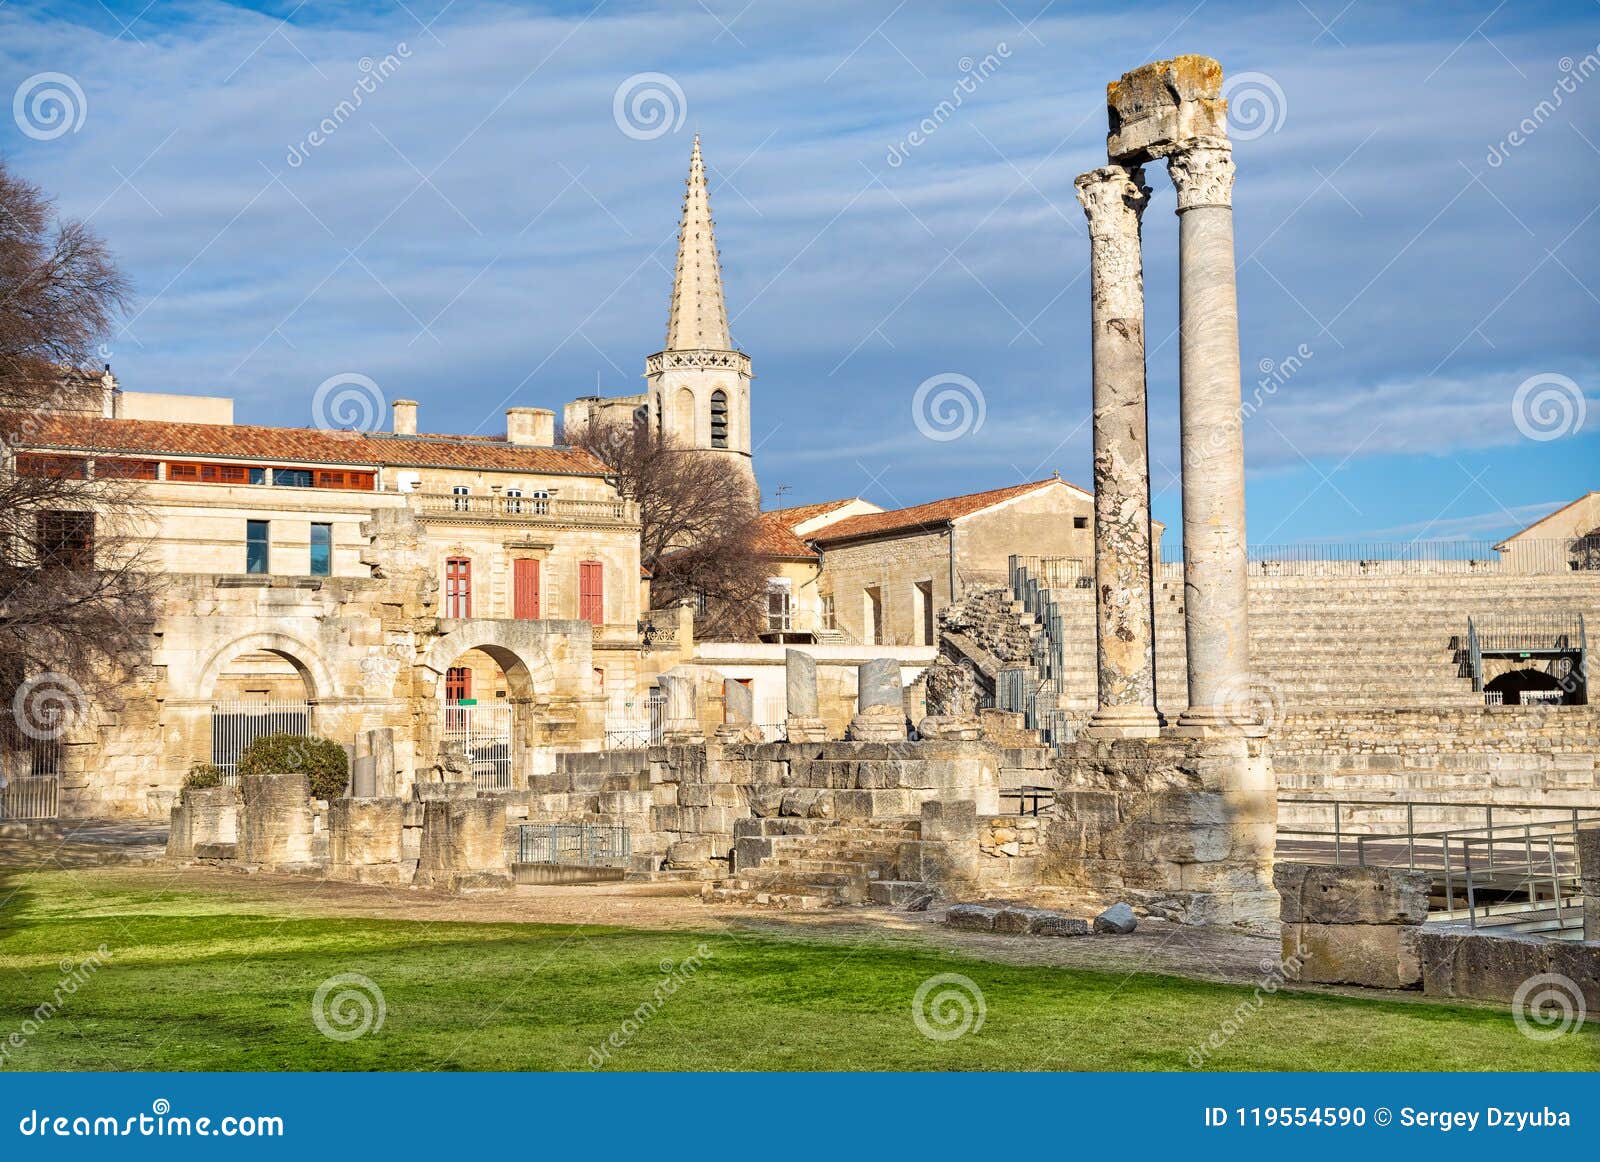 Oude Roman Kolommen En Amphitheatre in Arles Stock Foto - Image of ...